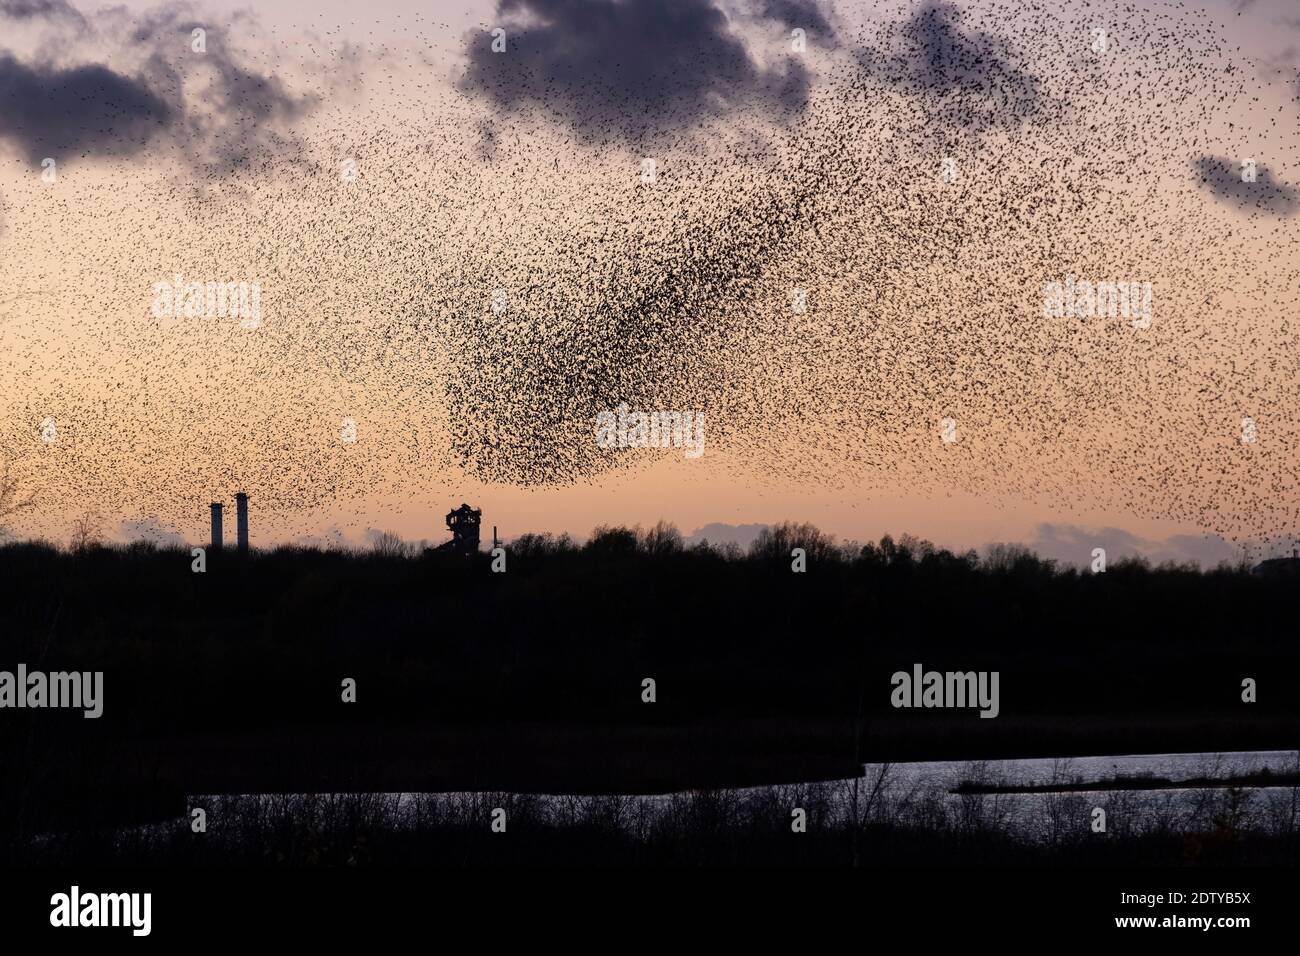 Murmuration de Starlings sur les flashs de Neumann au coucher du soleil, près de Northwich, Cheshire, Angleterre, Royaume-Uni Banque D'Images